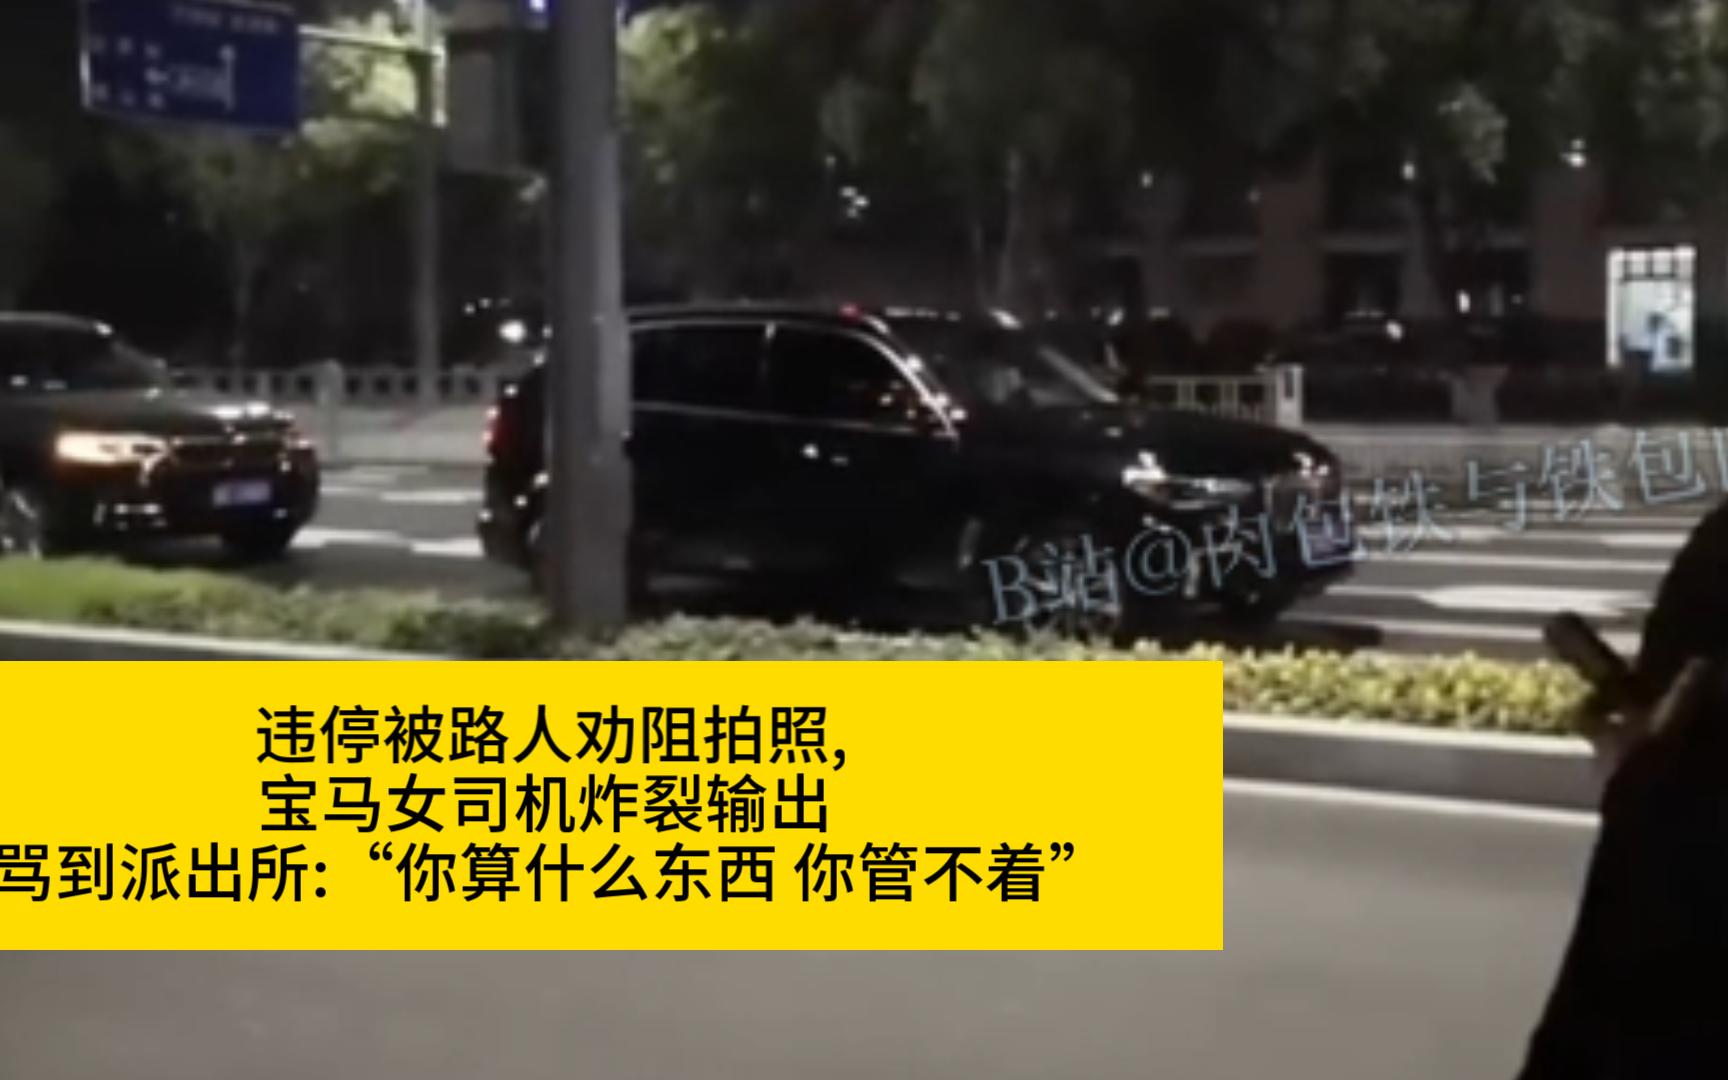 （无码版）11.14浙江绍兴，宝马车违停被路人劝阻拍照，宝马女司机炸了，疯狂输出。